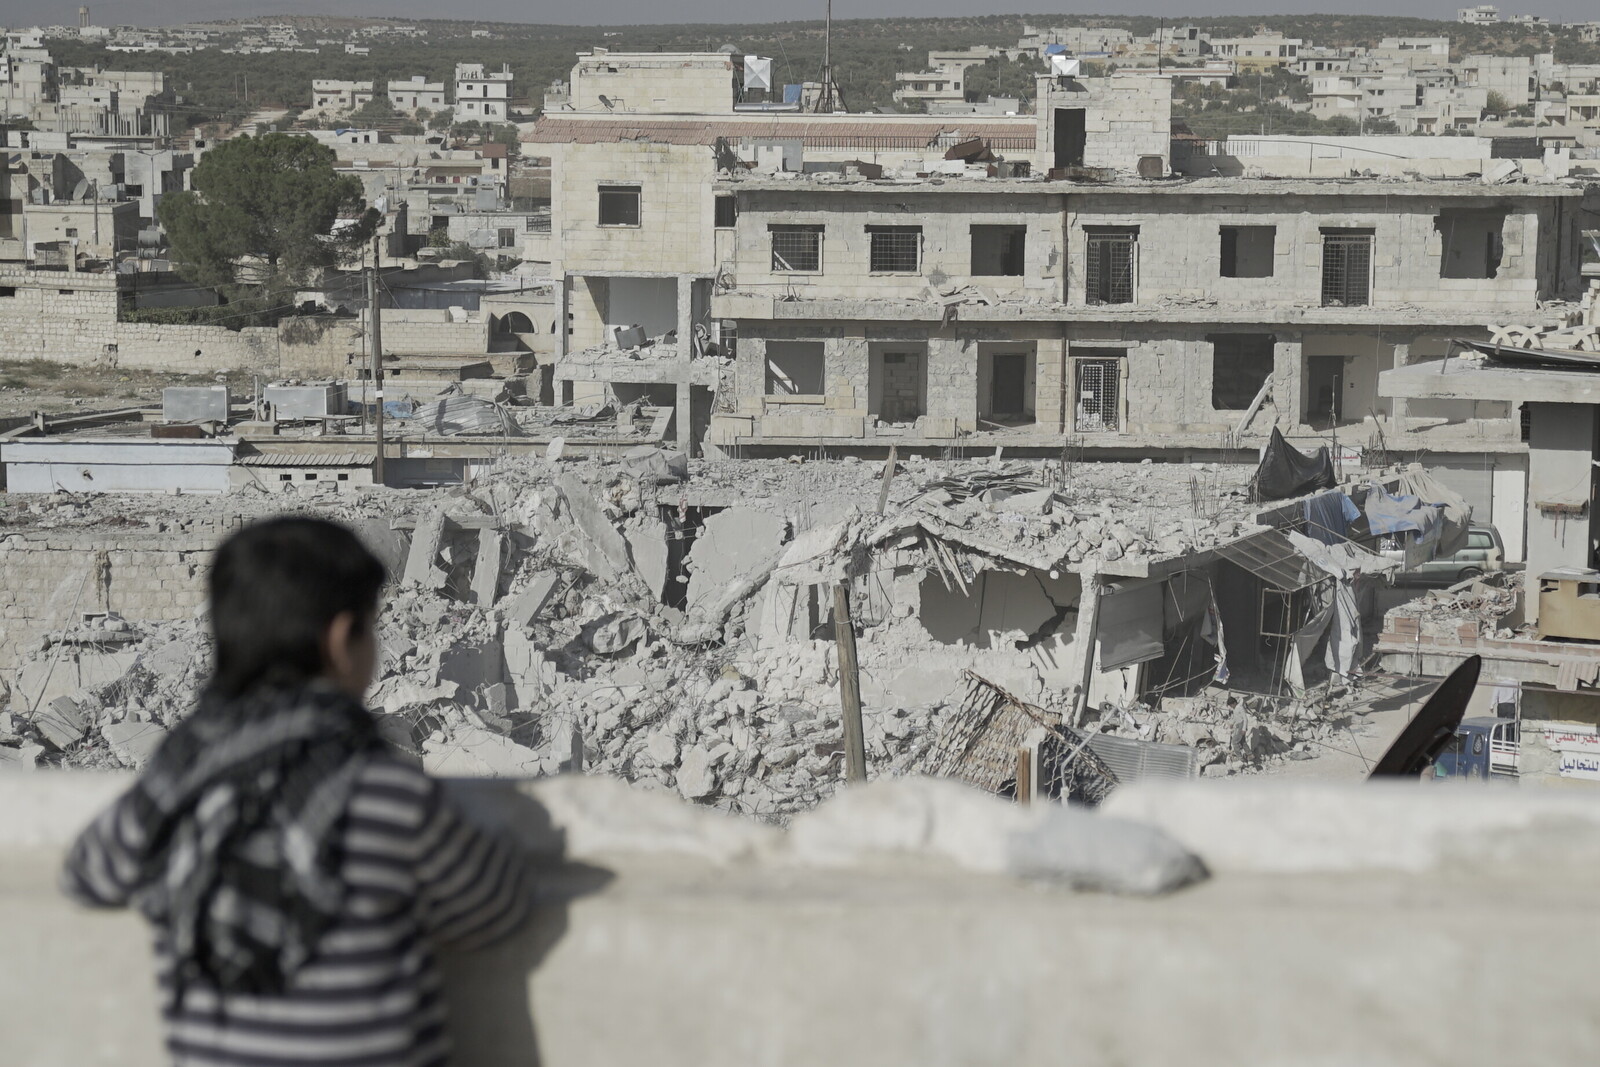 Ein Kind in Syrien schaut auf zerstörte Häuser